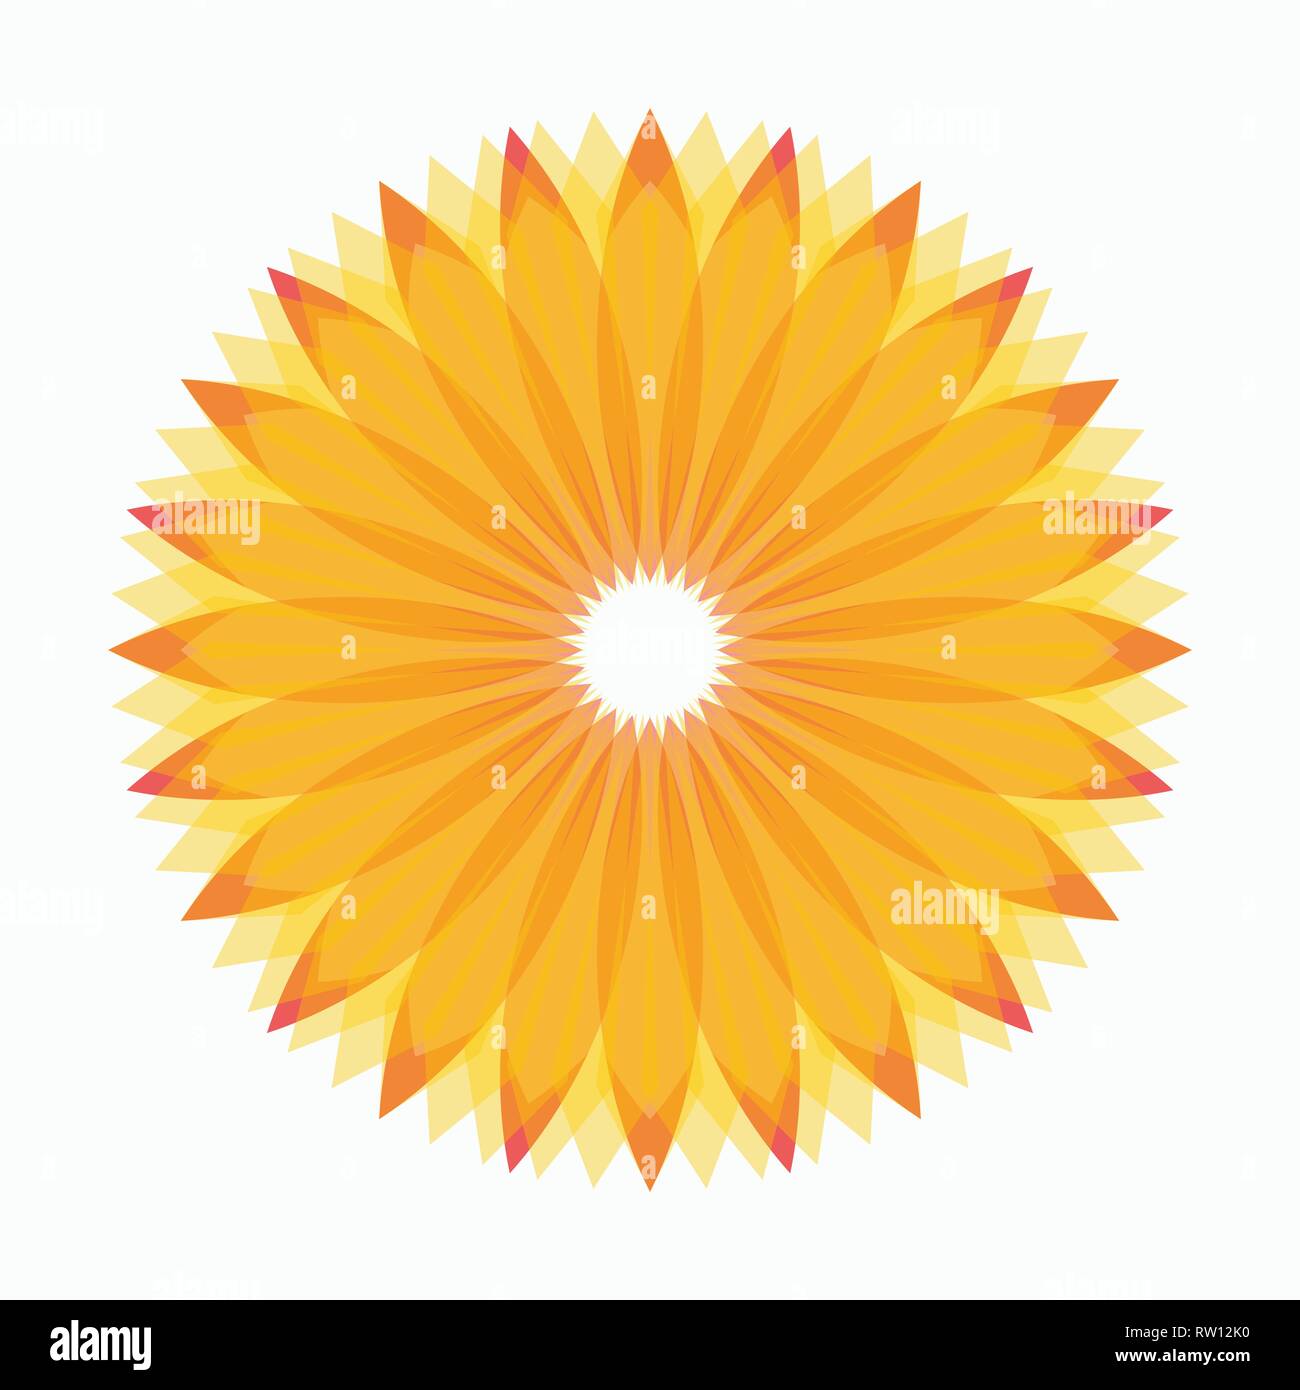 Geometrische Logo Design vorlage, Kreis Form, Blume Symbol, sun Form. Gelb- und Orangetönen. Sonnenblume Vektorsymbol, clip art Design. Vektor Symbo Stock Vektor